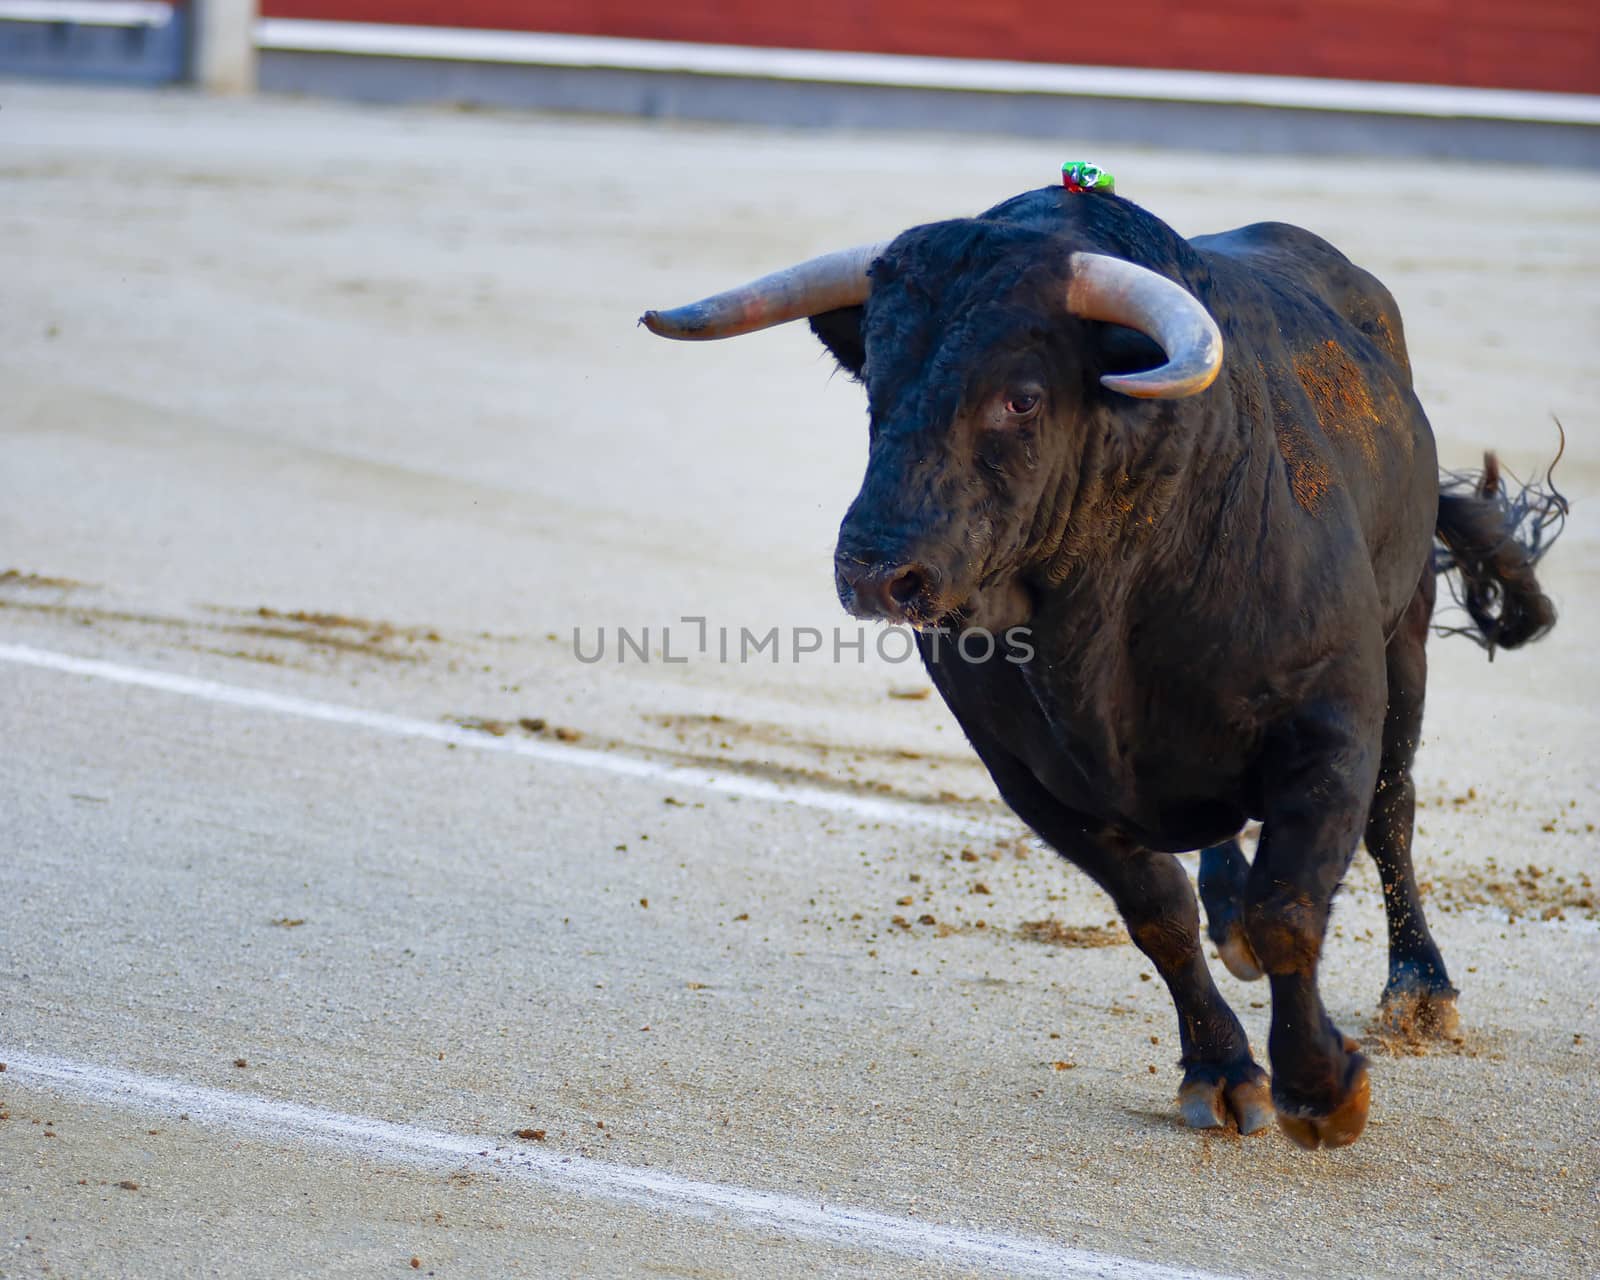 Bullfighting. Spanish Fiesta by ocusfocus